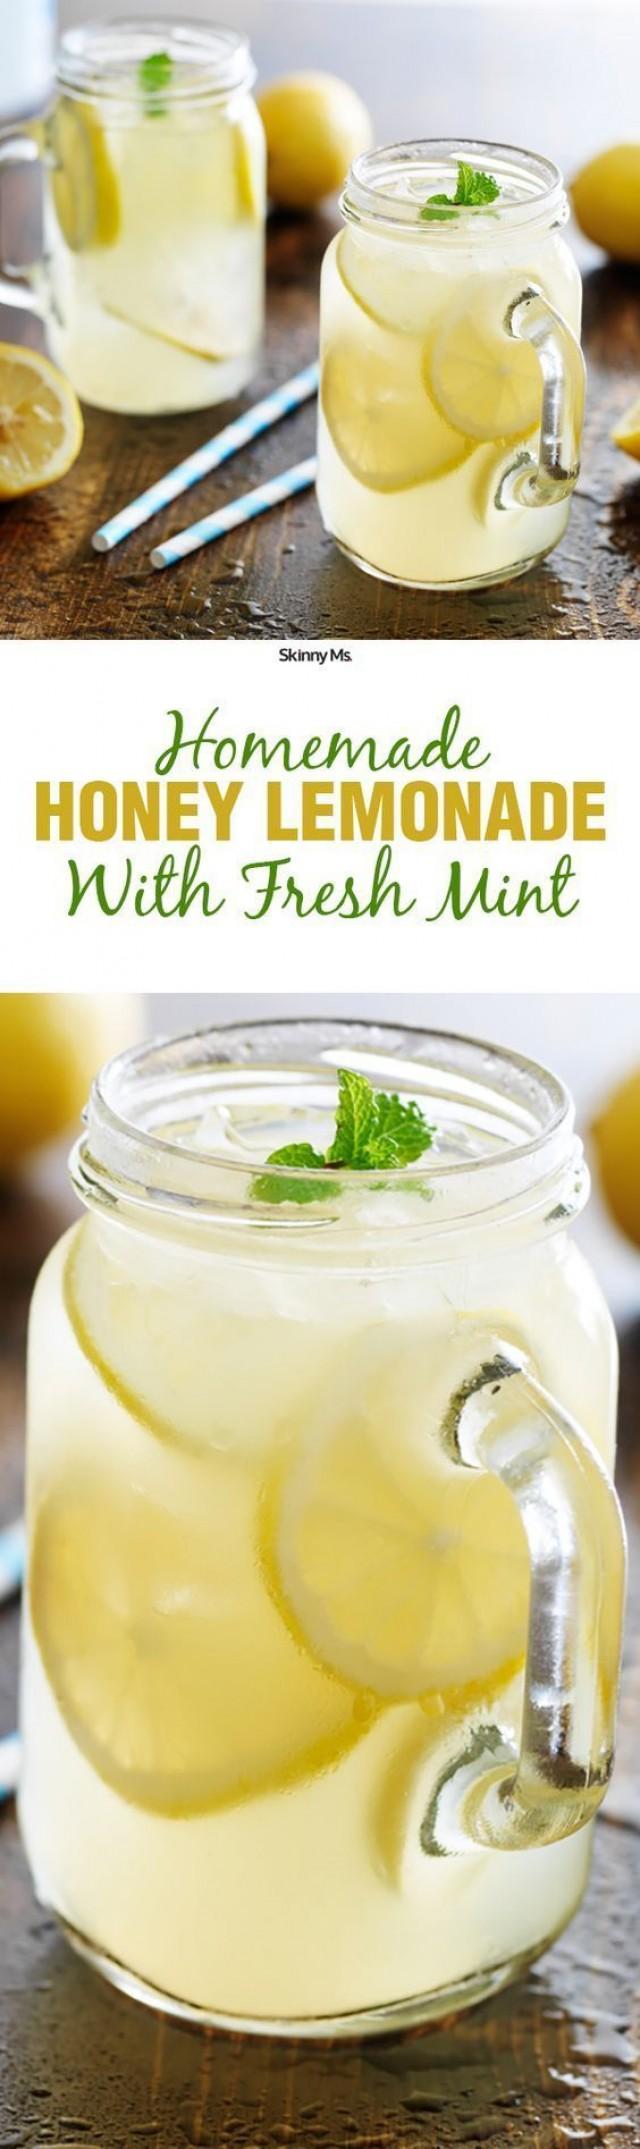 Homemade Honey Lemonade With Fresh Mint